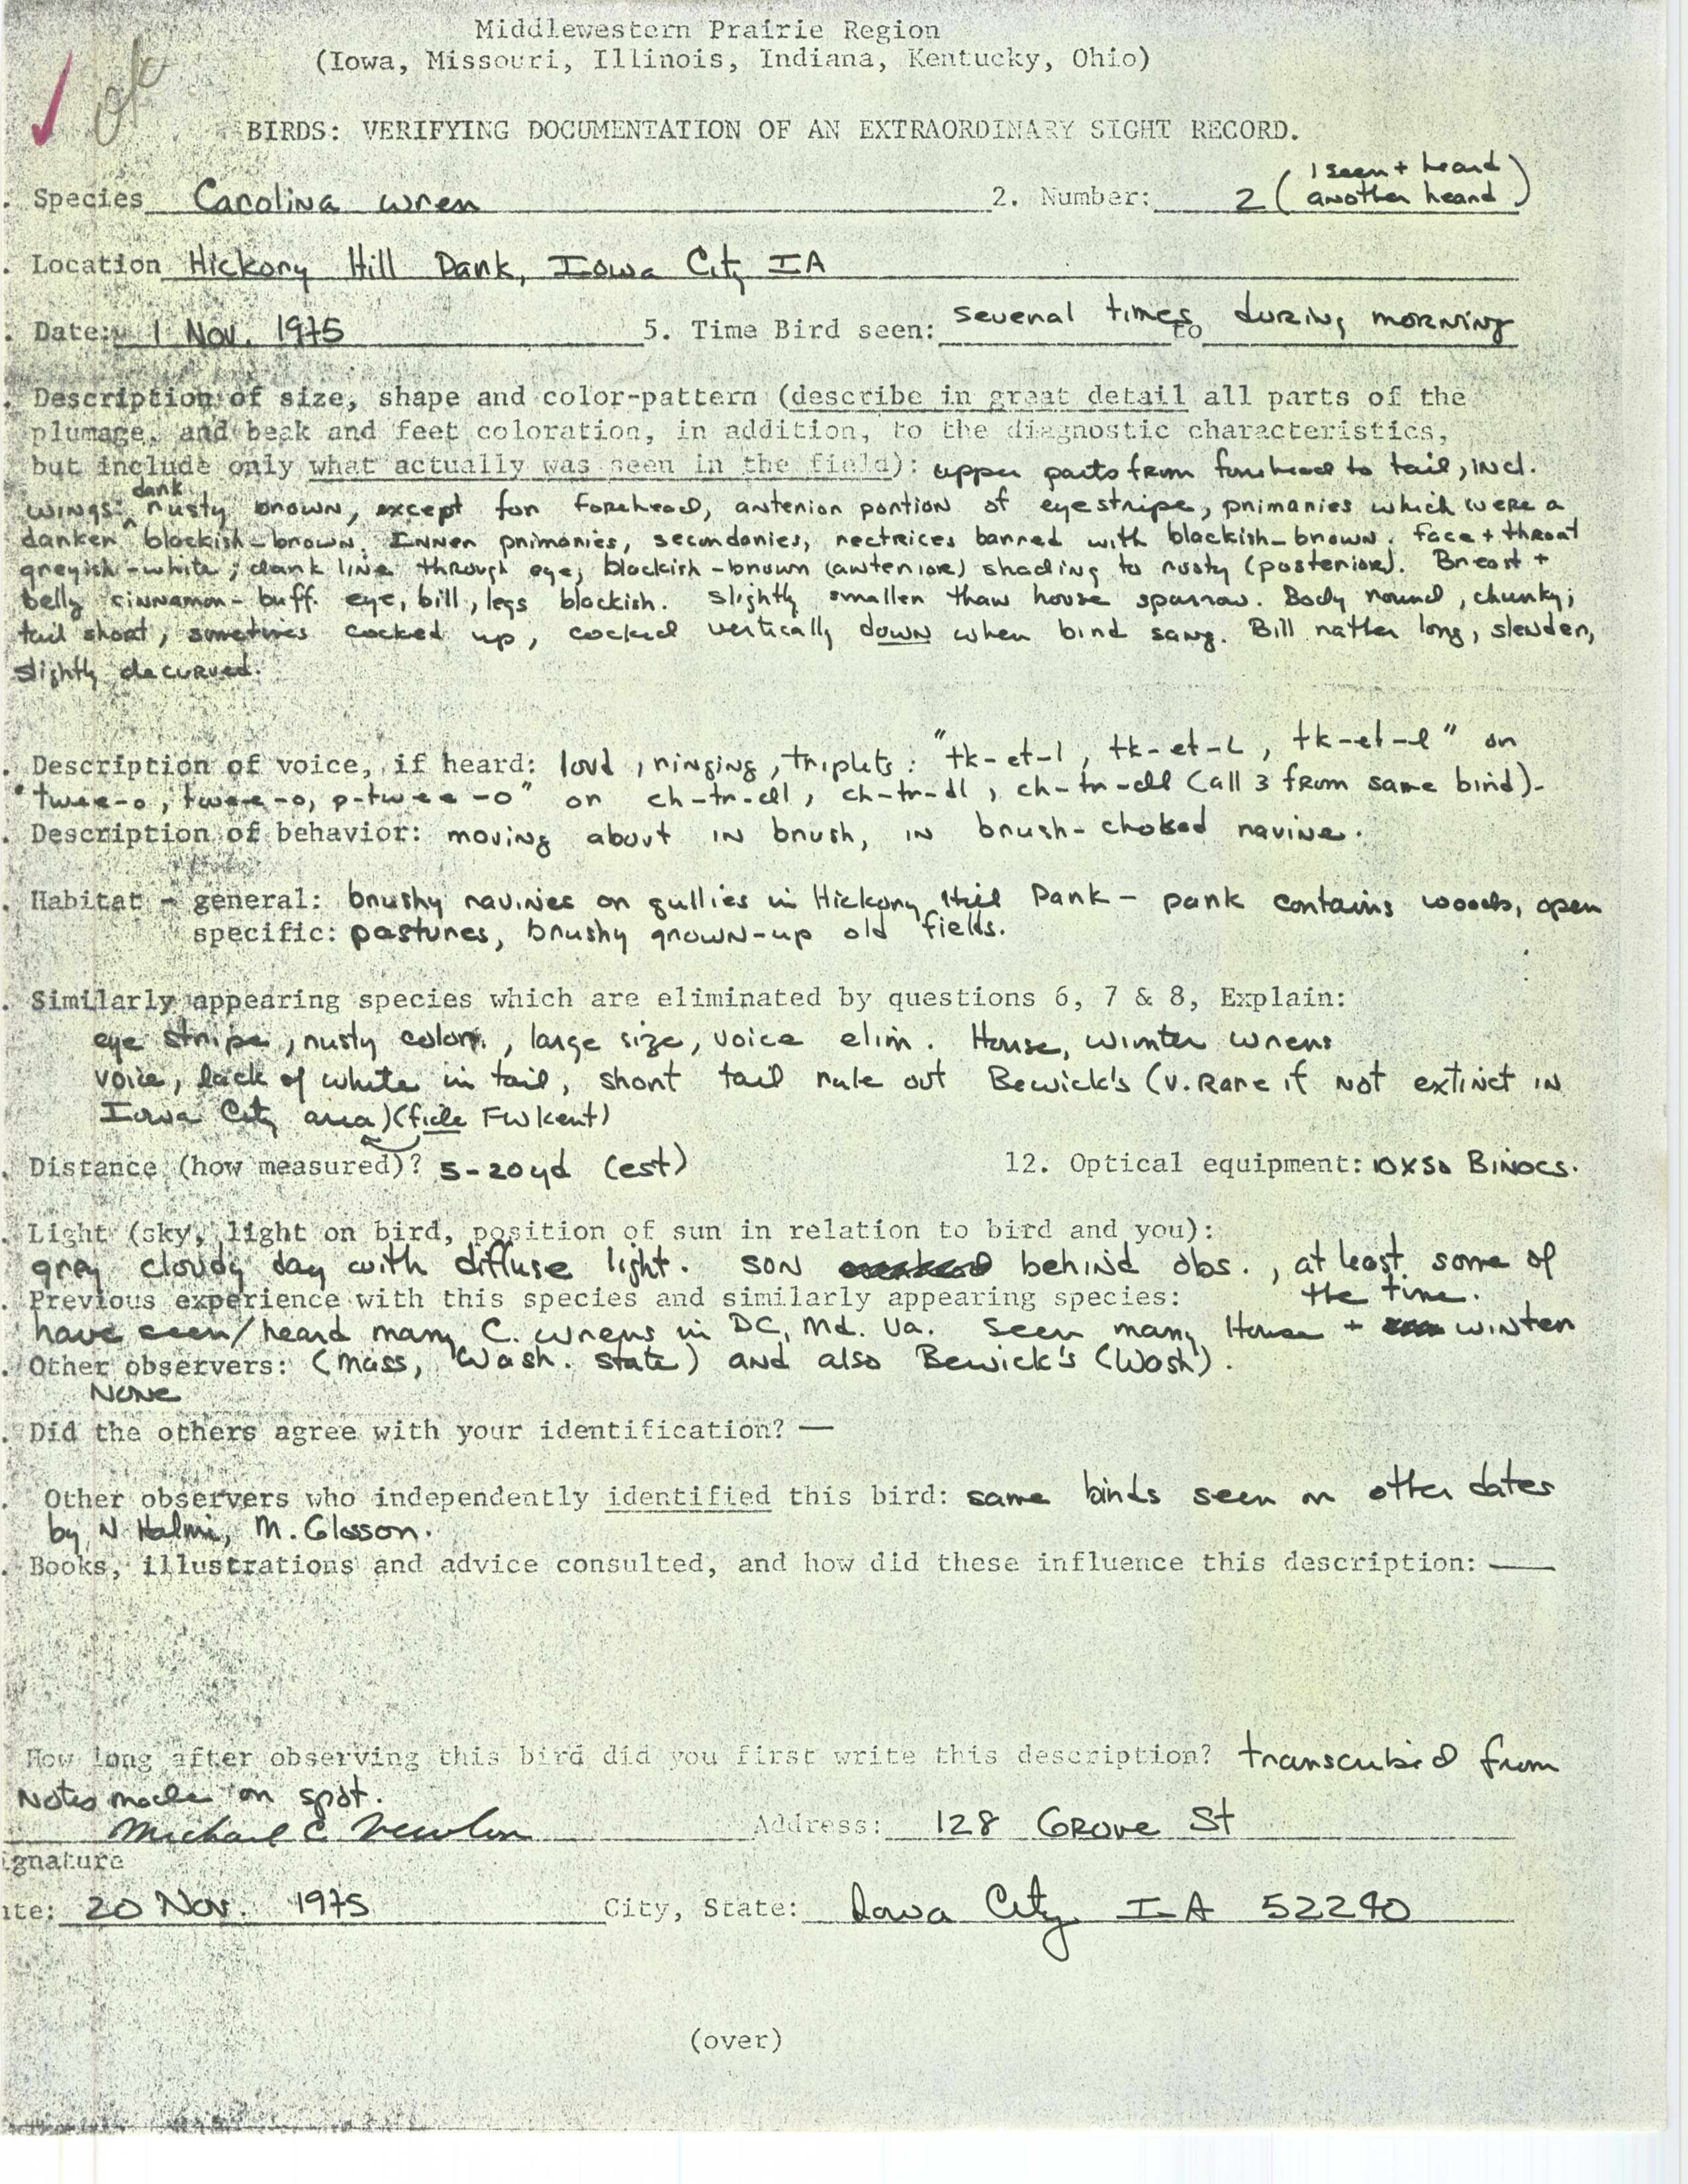 Rare bird documentation form for Carolina Wren at Hickory Hill Park, 1975